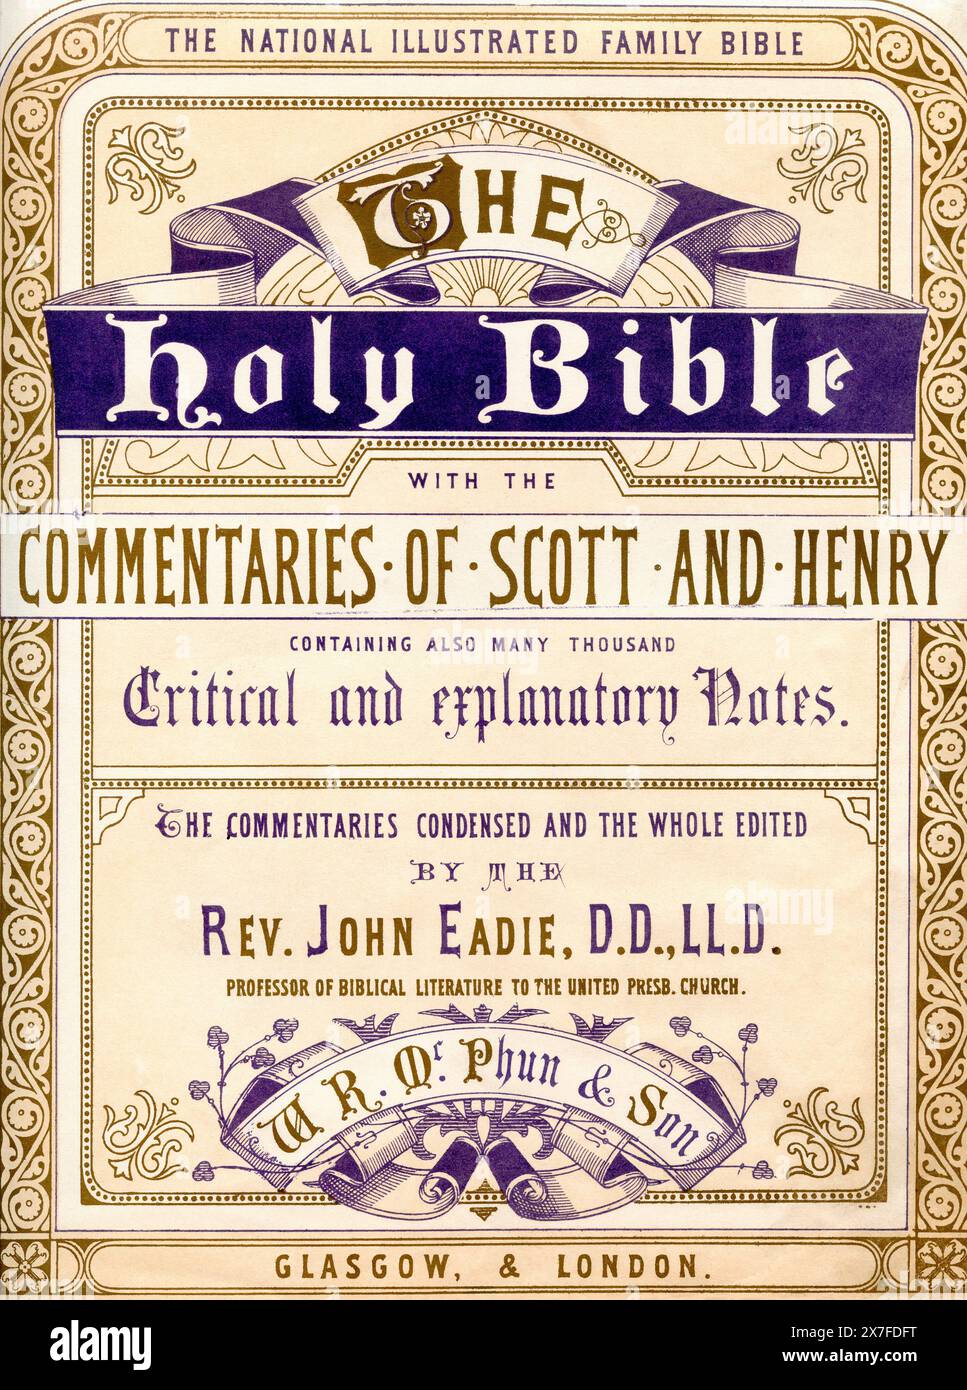 Frontispice de la Sainte Bible avec les commentaires de Scott et Henry, c. 1870. Banque D'Images